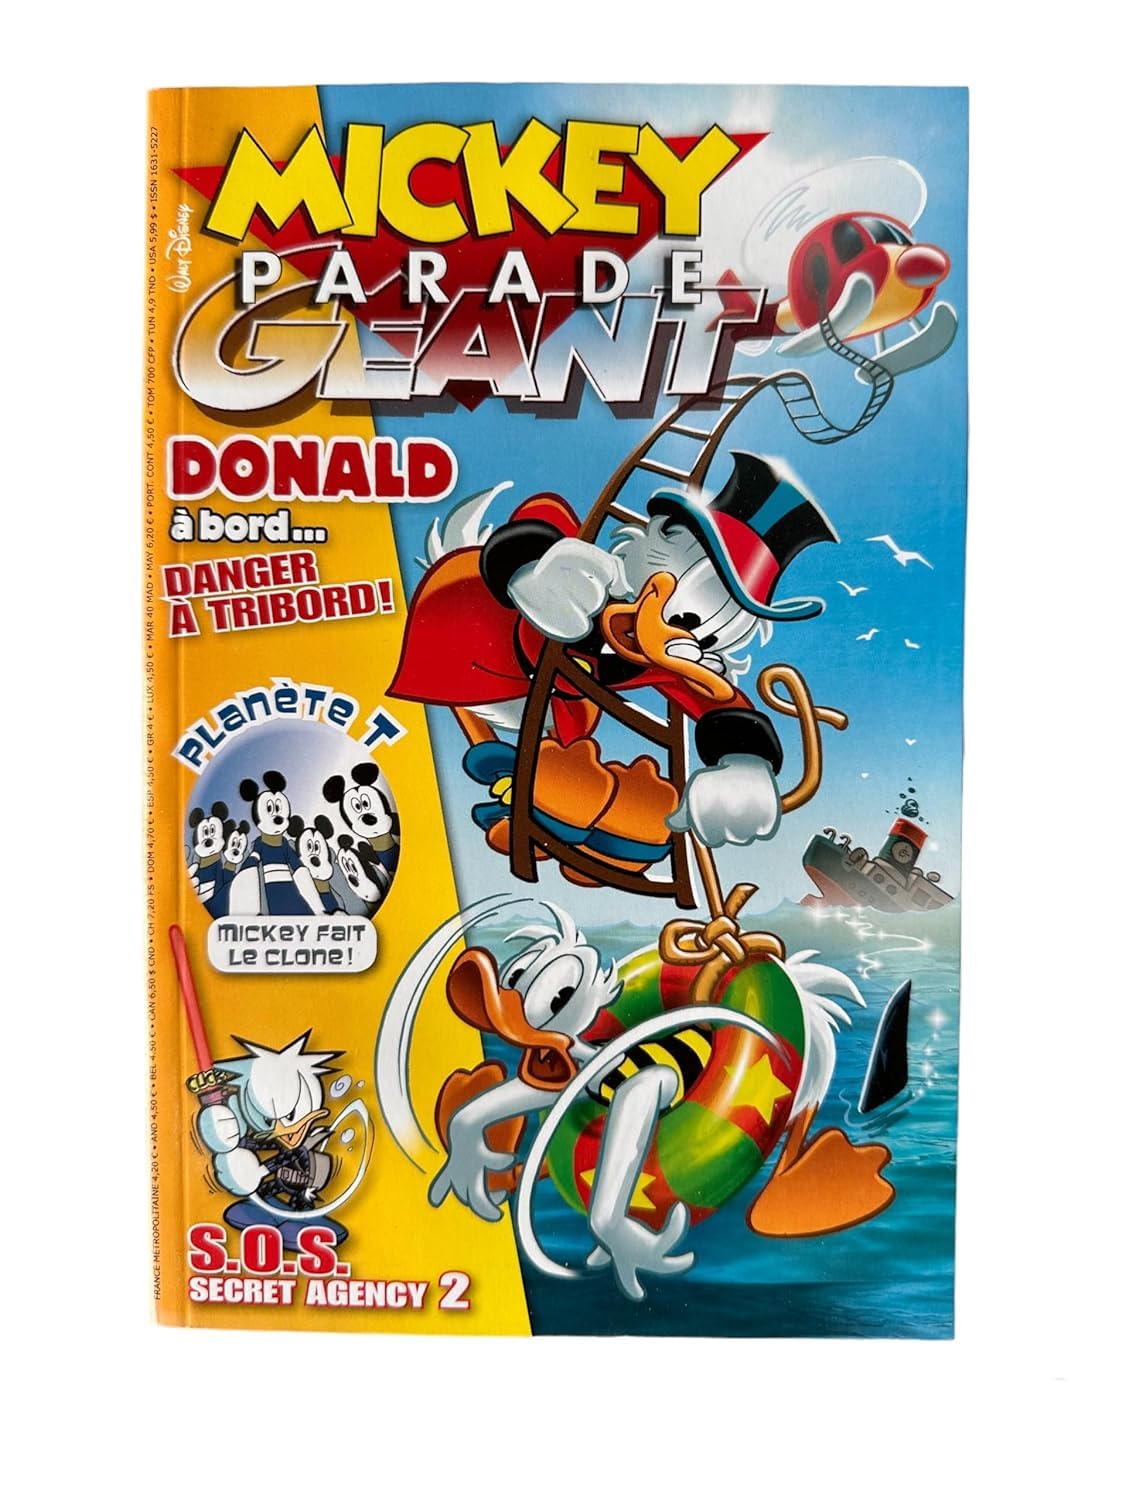 Mickey Parade Géant Numéro 329 : Donald à bord... Danger à tribord!